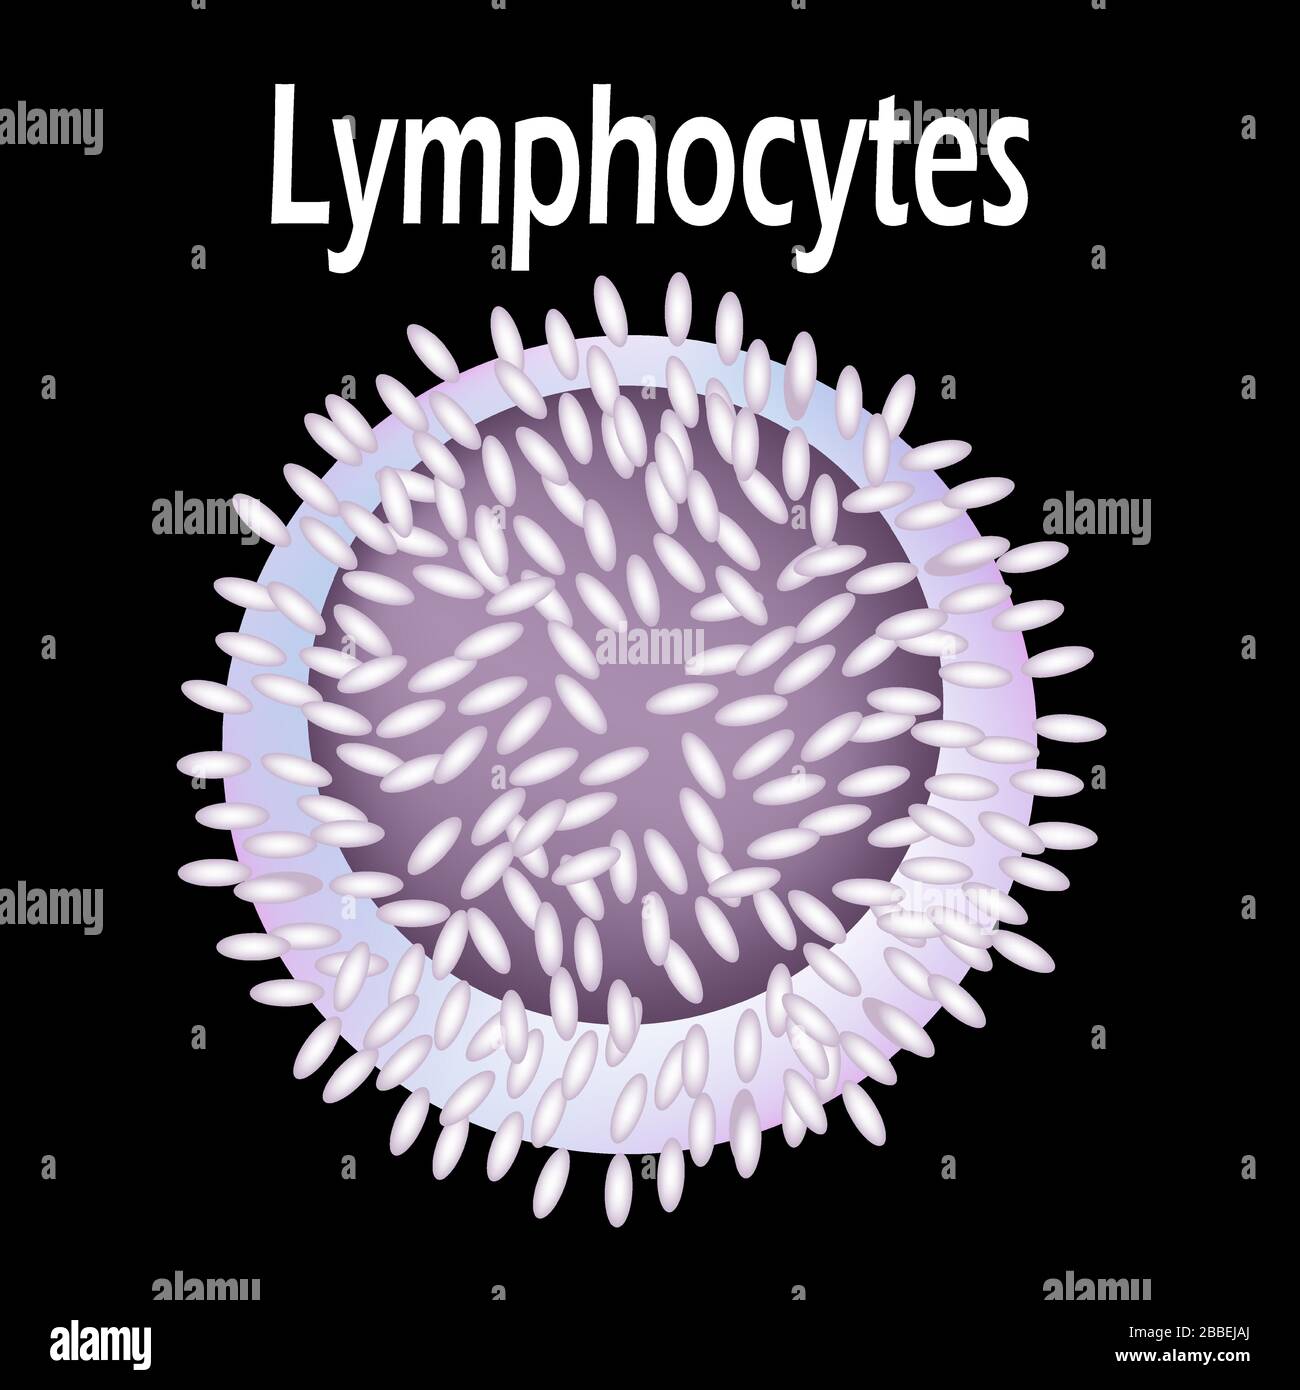 Lymphocytes Cell Diagram